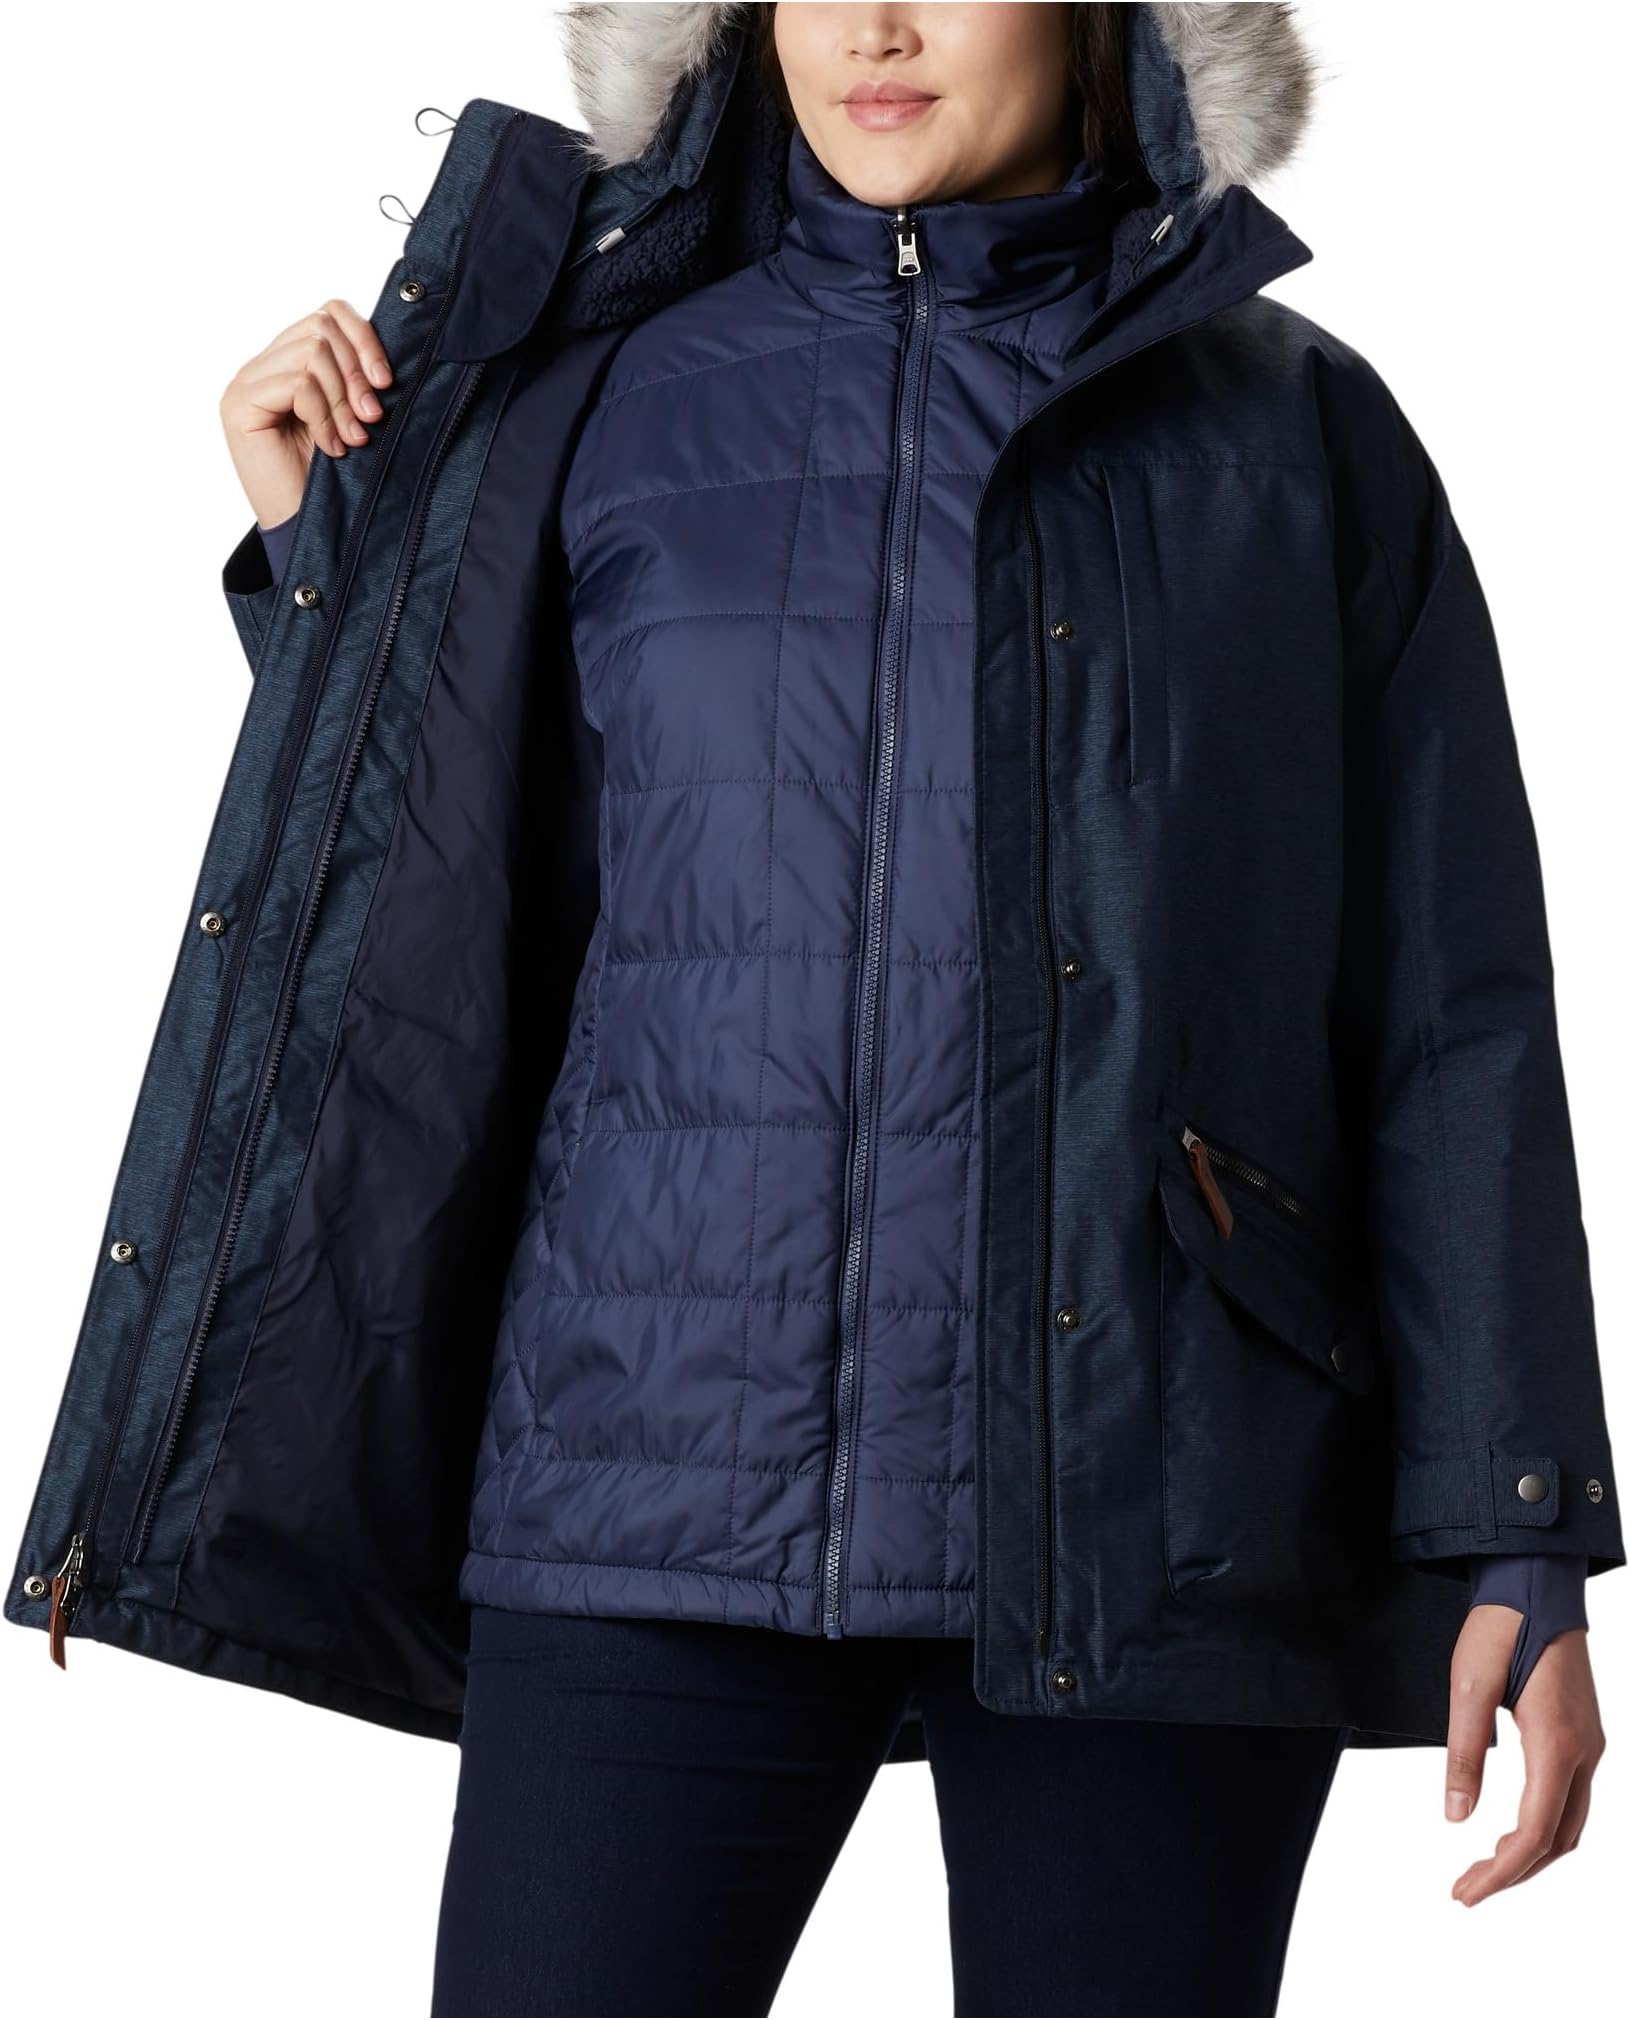 Куртка Carson Pass IC больших размеров Columbia, цвет Dark Nocturnal/Dark Nocturnal Sherpa/Nocturnal